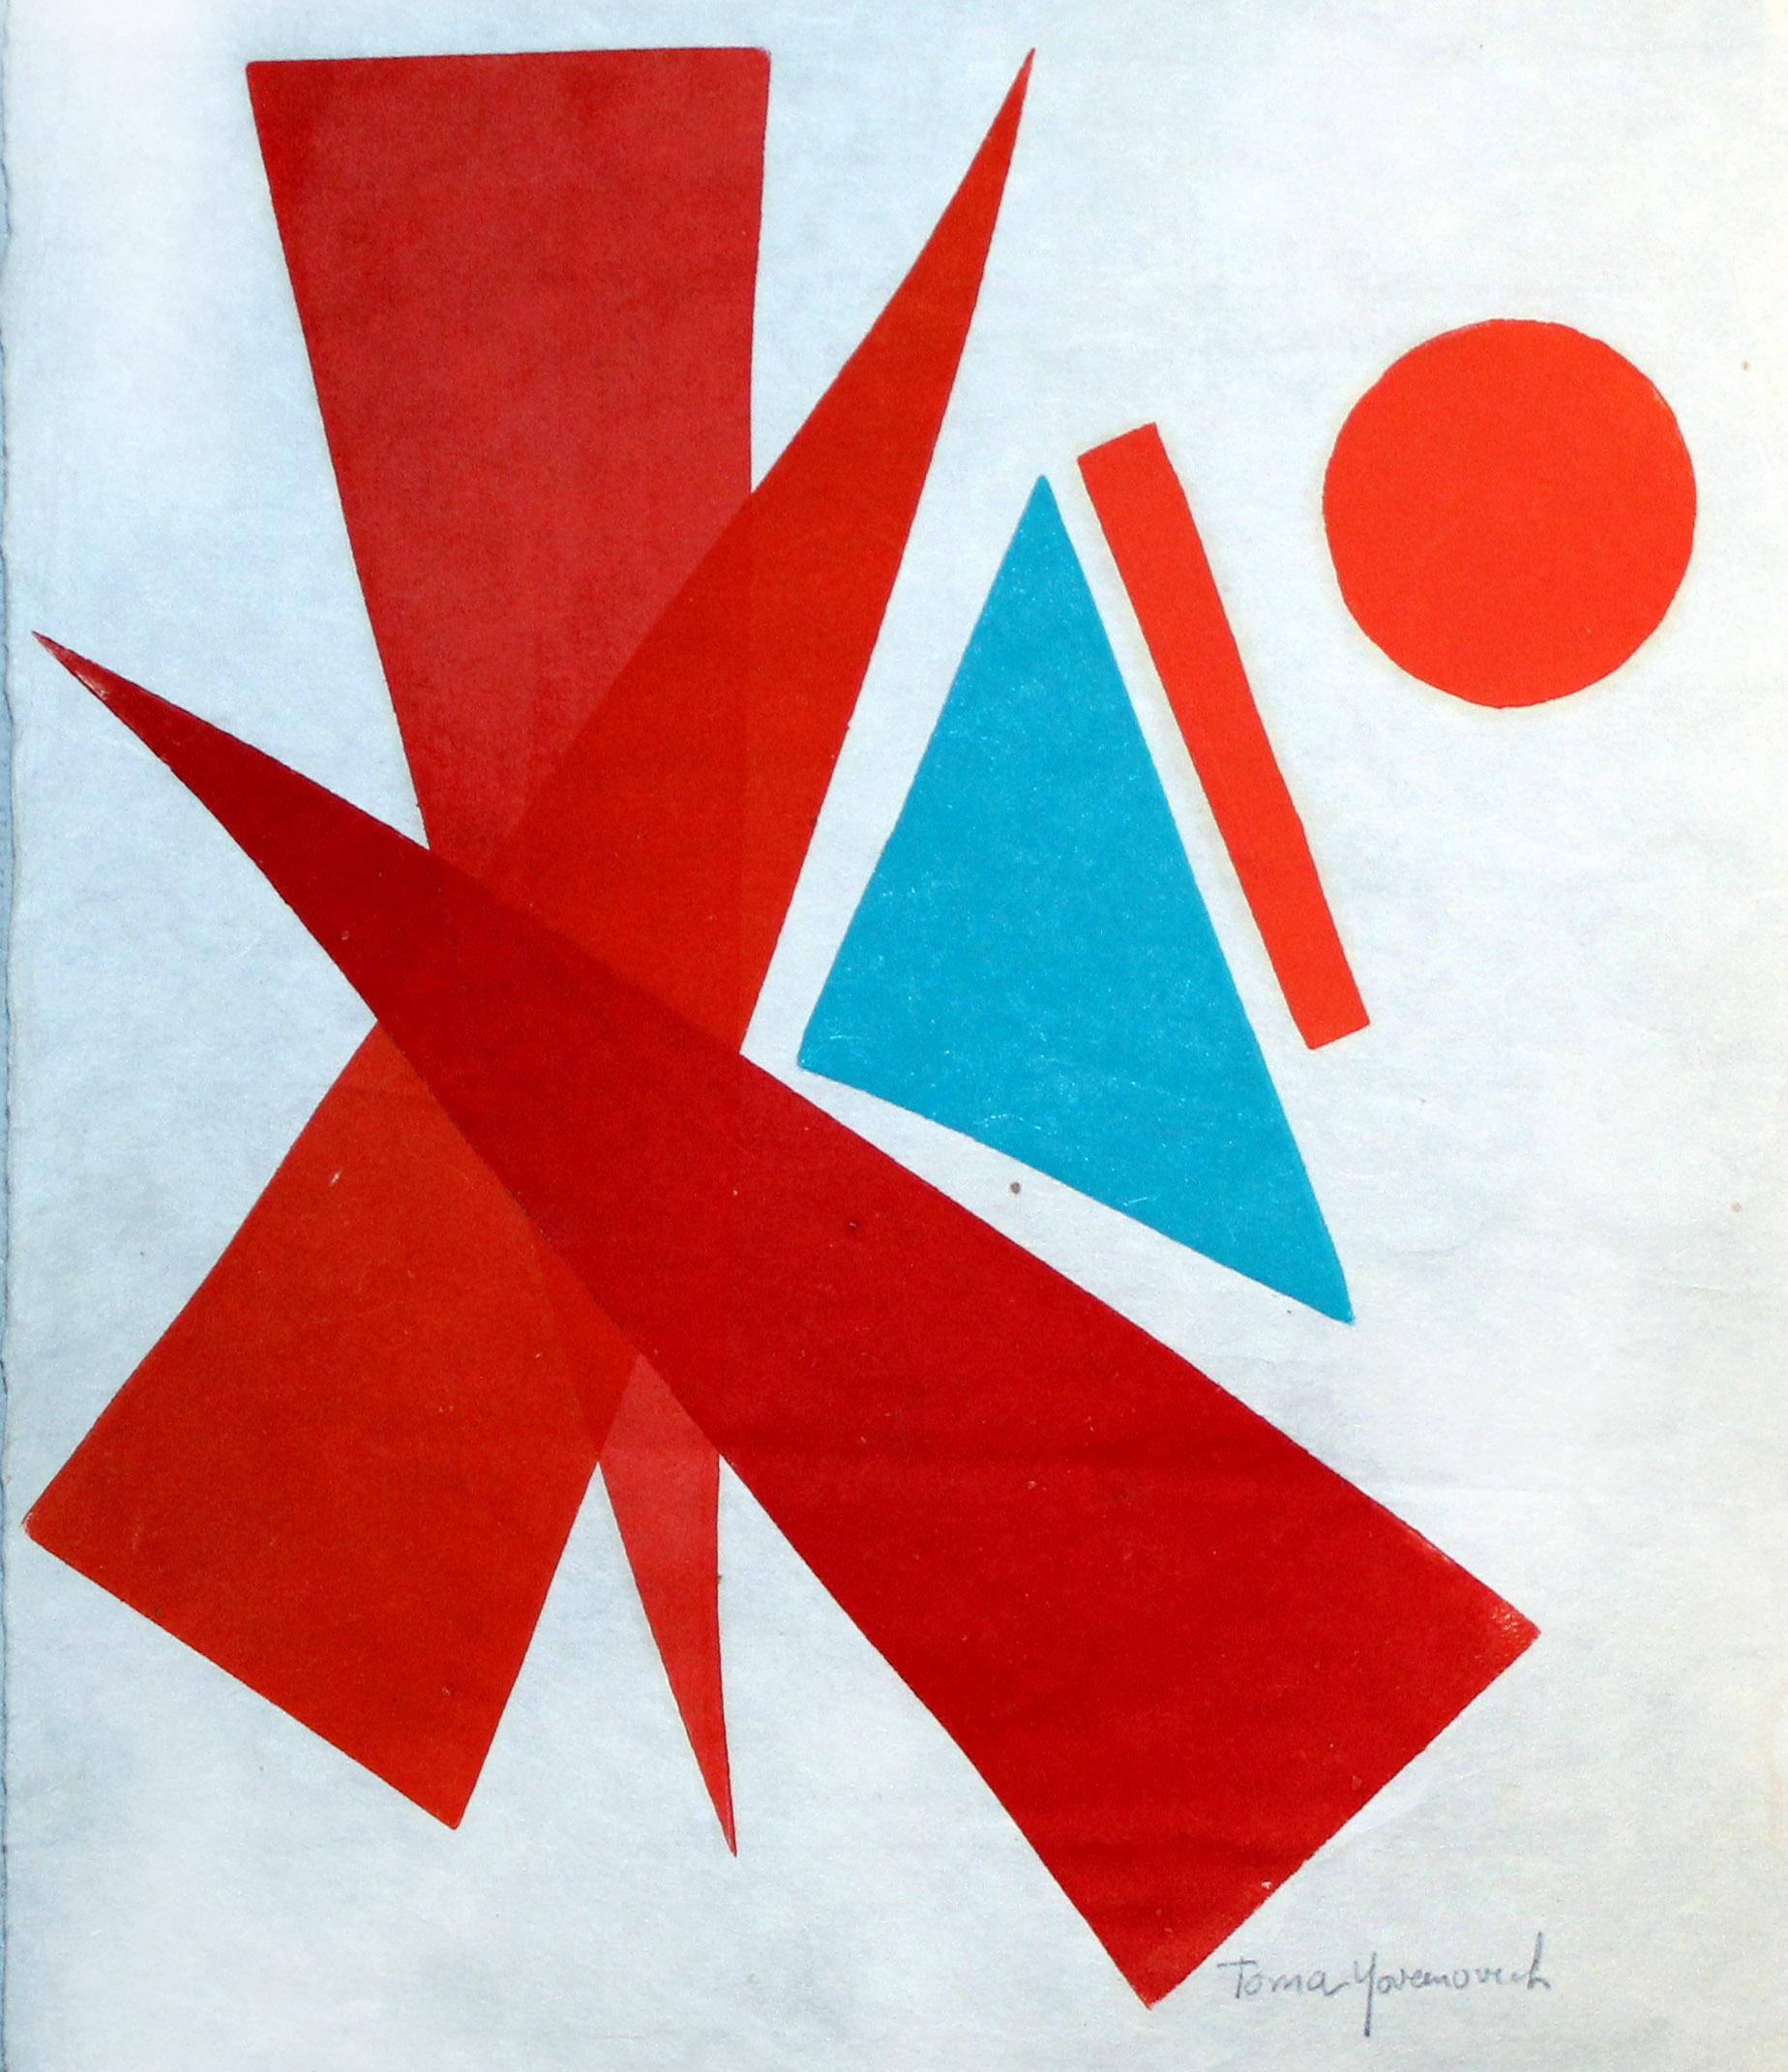 Abstraktes, farbenfrohes abstraktes Monotypie-Gemälde, amerikanisches Mid-Century 1960 (Abstrakter Expressionismus), Print, von Toma Yovanovich